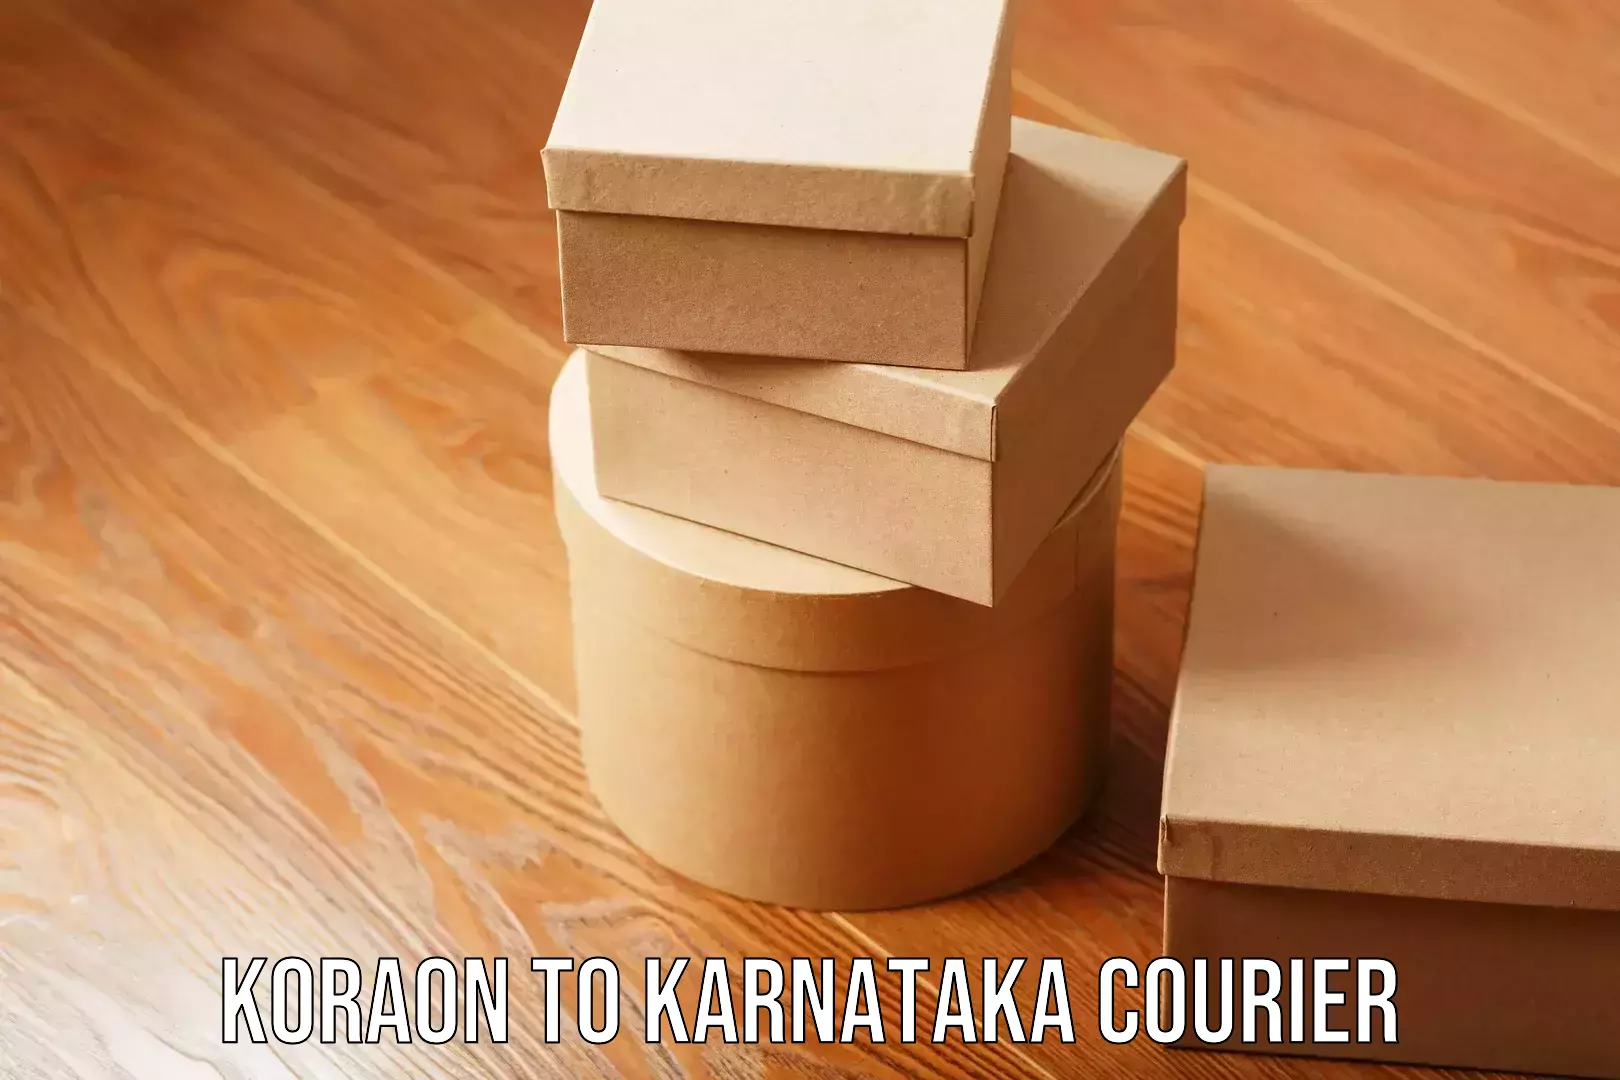 Efficient furniture shifting Koraon to Karnataka